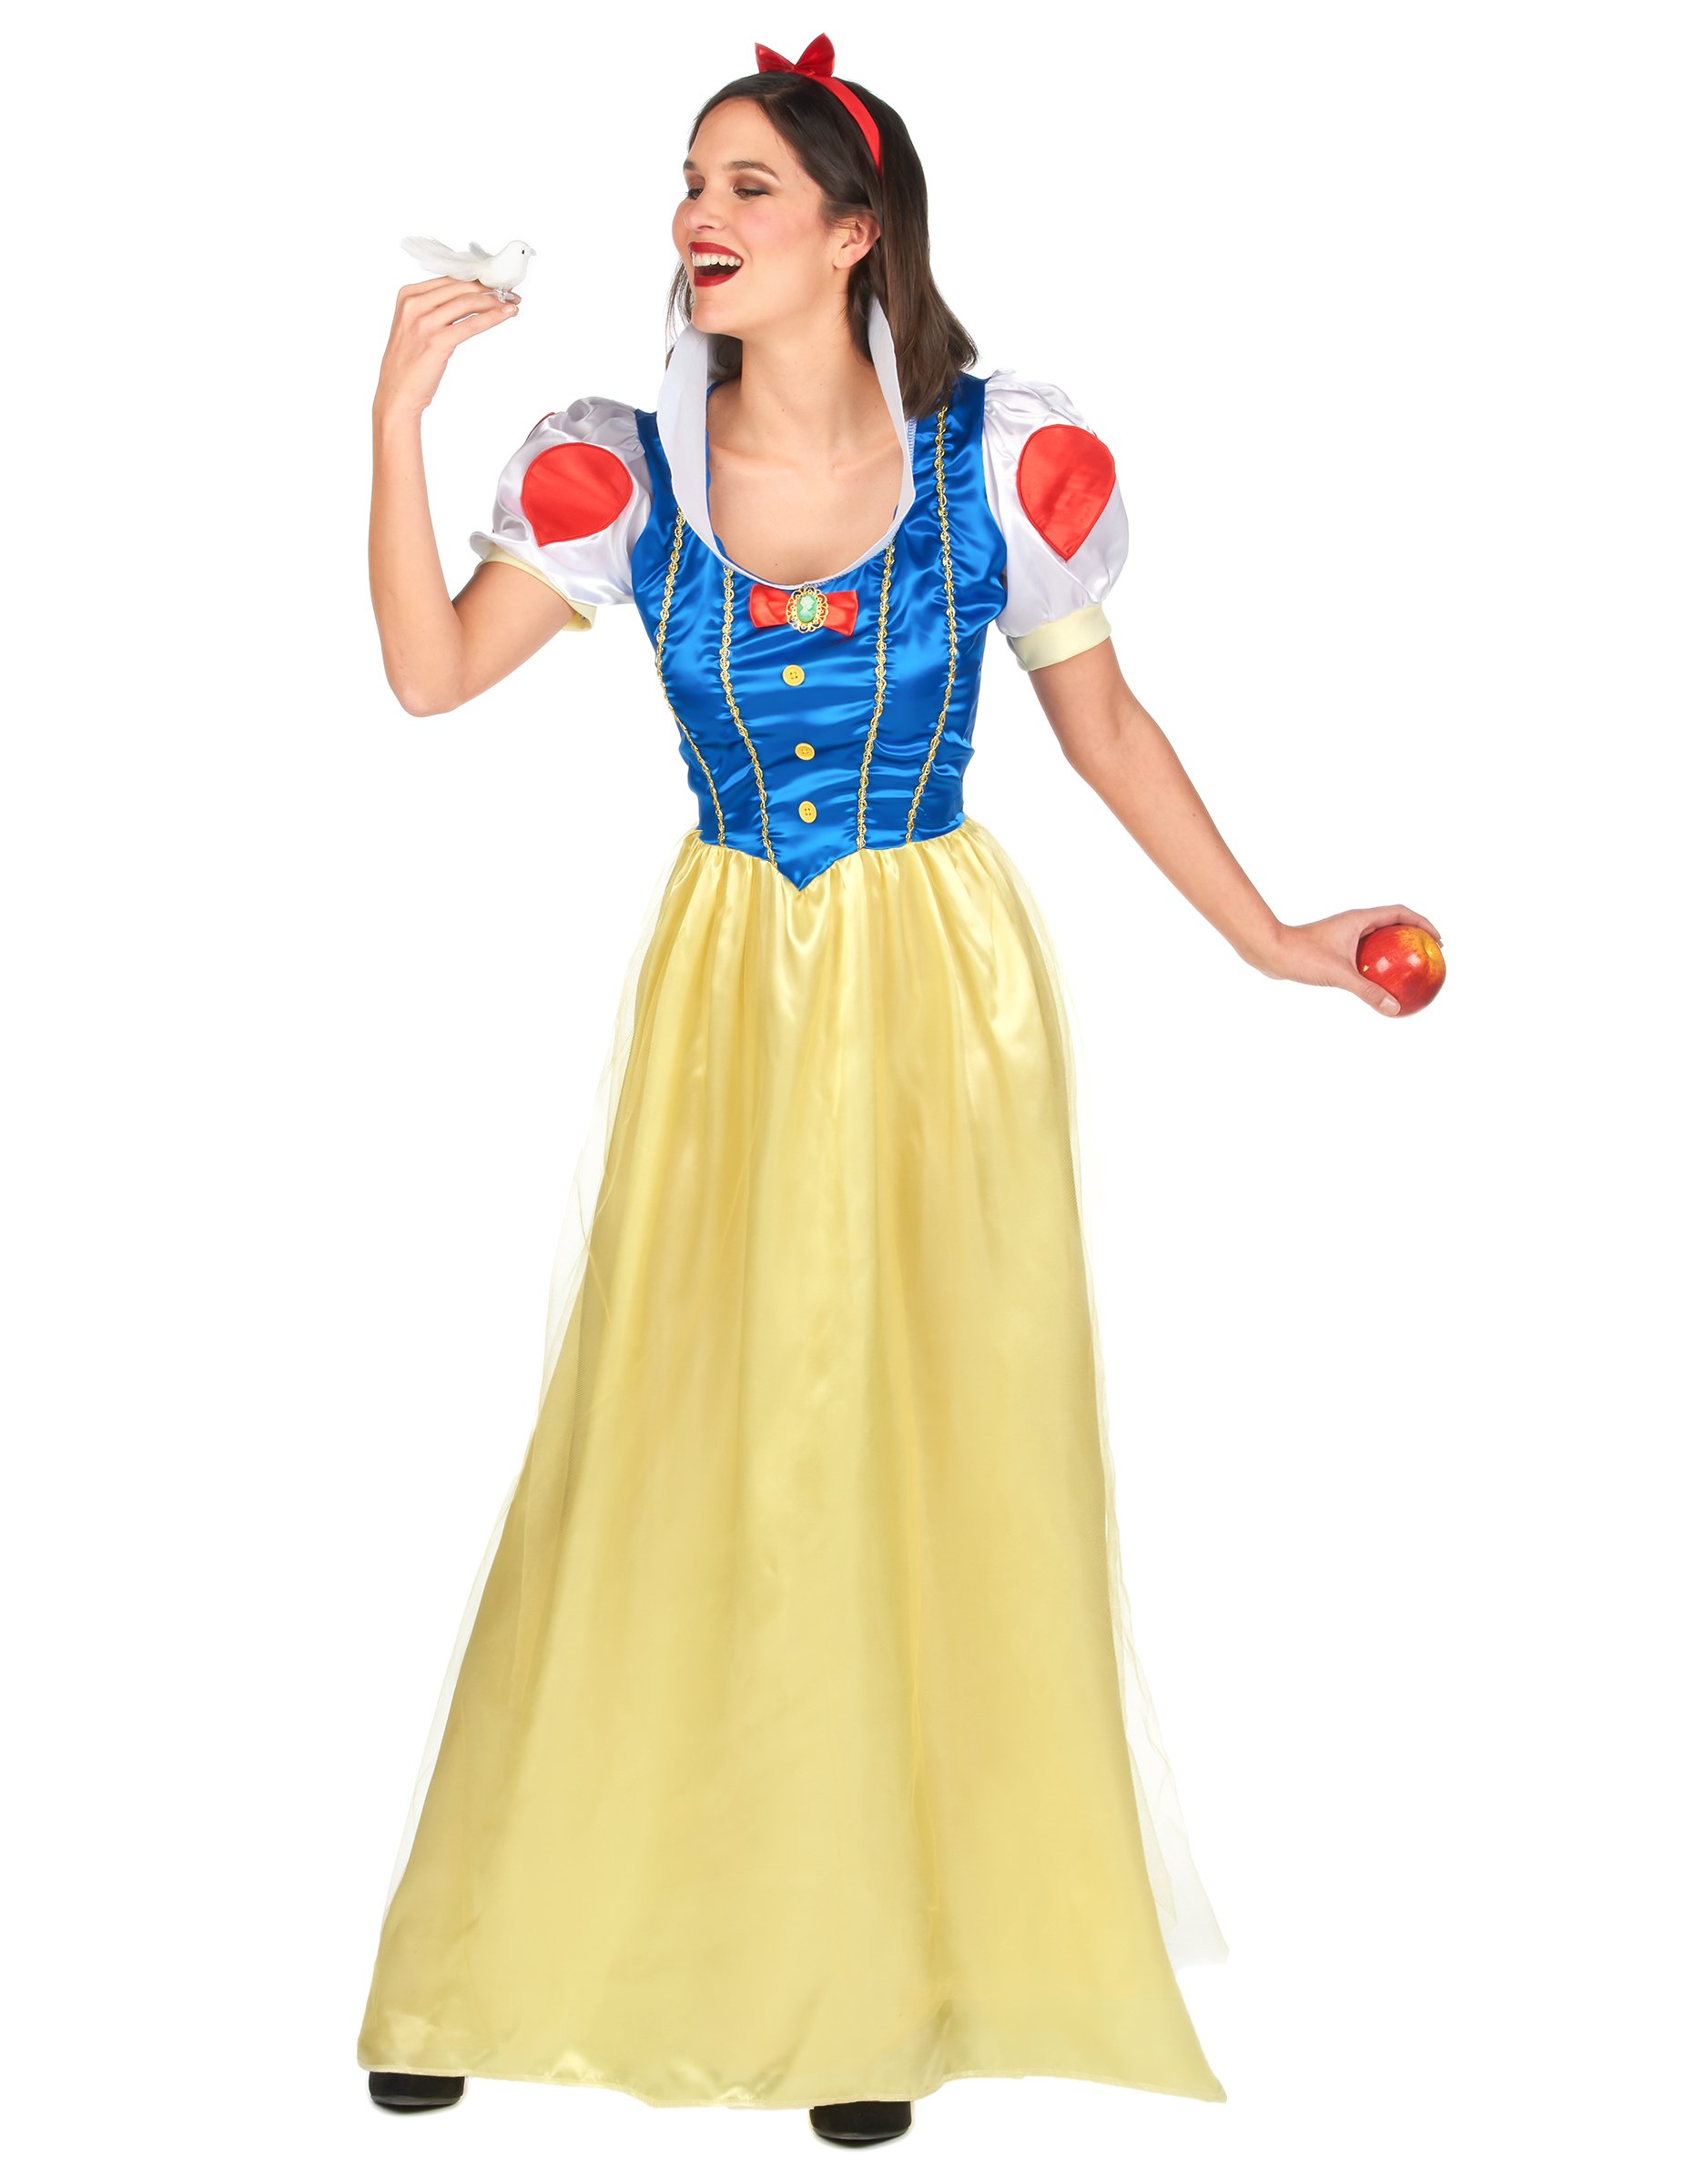 Bezaubernde Märchen-Prinzessin Damenkostüm Schneewittchen gelb-blau-rot von LUCIDA